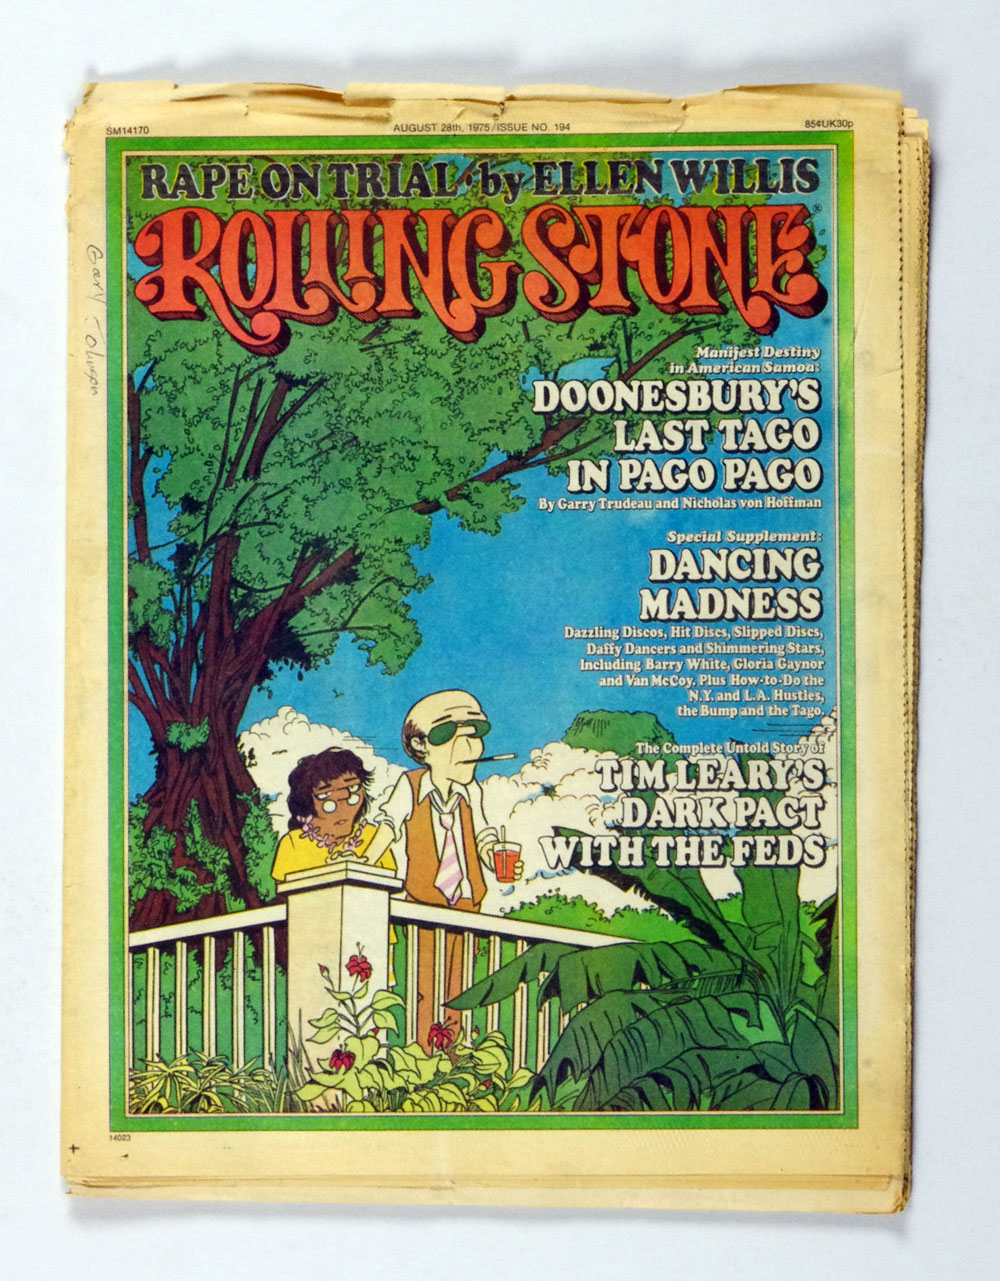 Rolling Stone Magazine Back Issue 1975 Aug 28 No. 194 Doonsbury